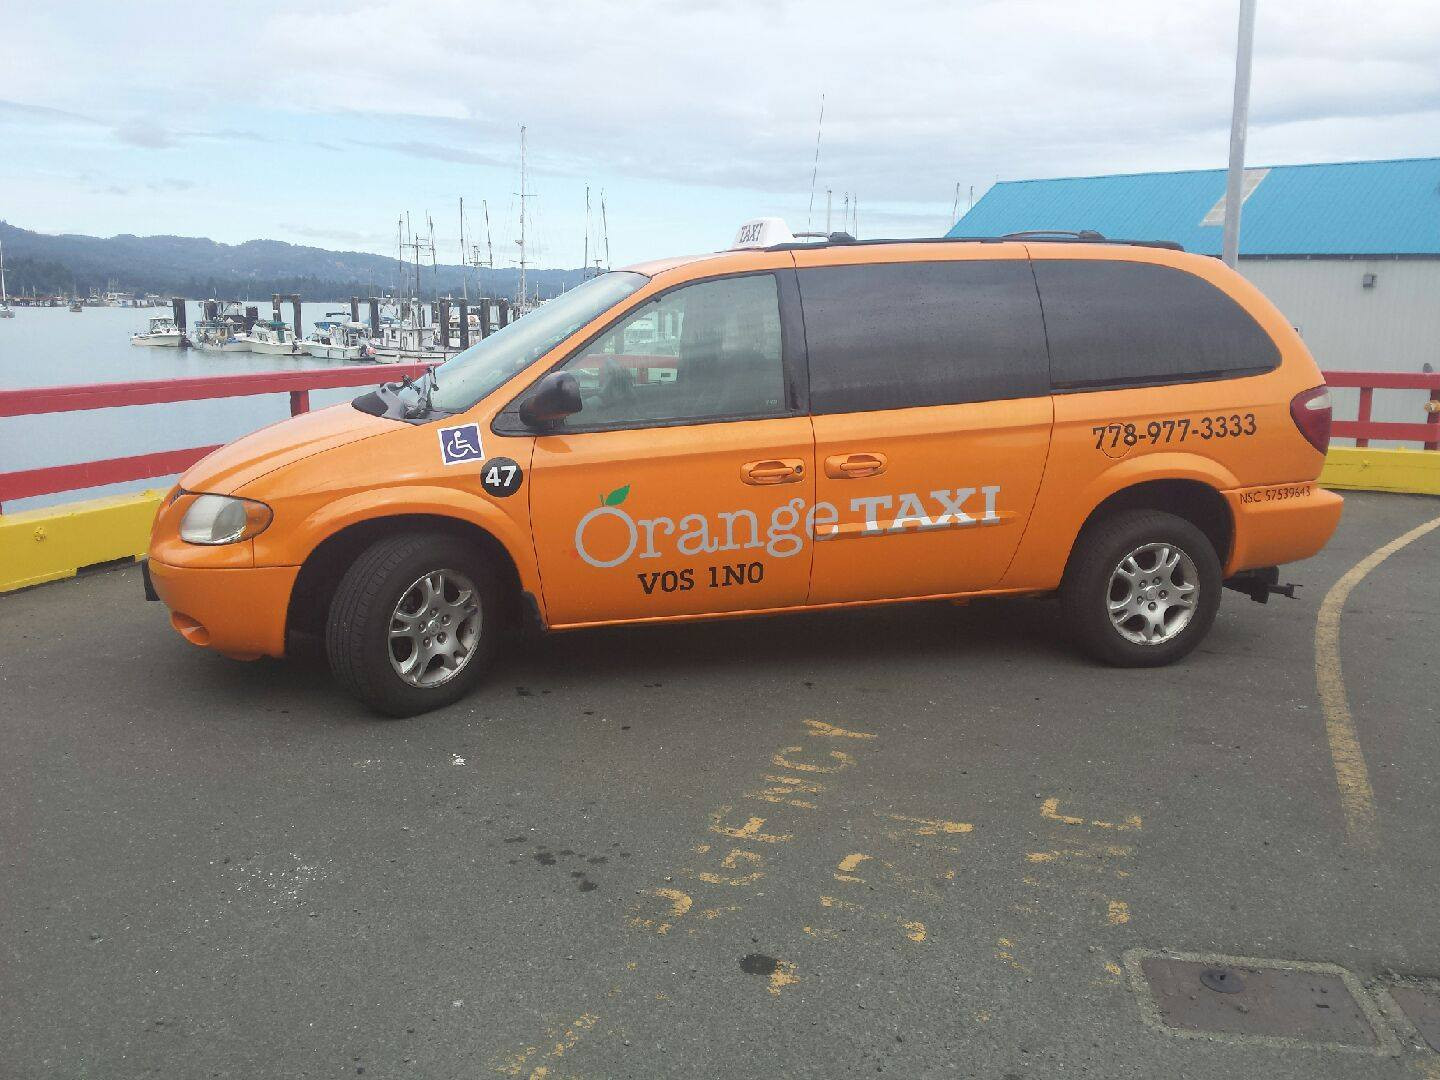 Taxi Orange Tiền Giang cung cấp dịch vụ vận chuyển chất lượng và giá cực rẻ